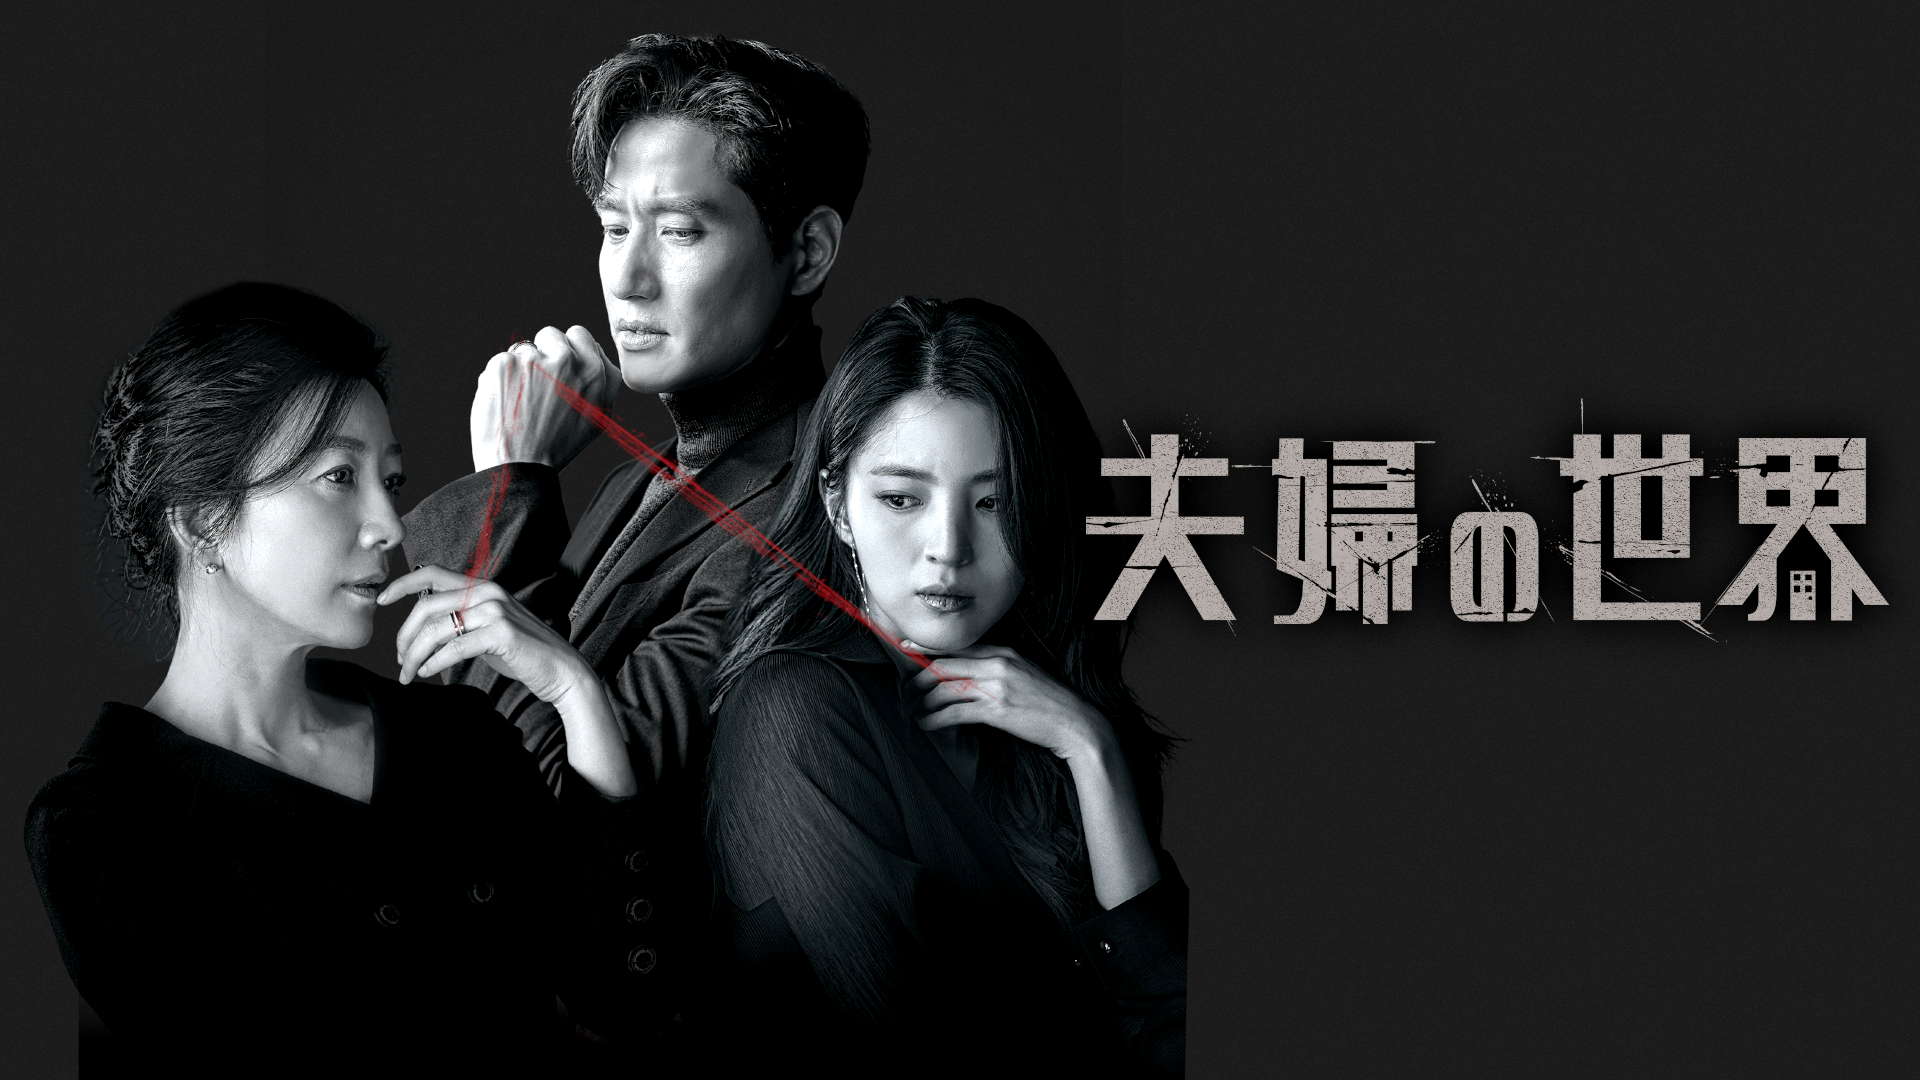 過激描写で19禁指定に。韓国歴代最高視聴率ドラマ『夫婦の世界』が描くドロドロ不倫愛憎劇の恐怖